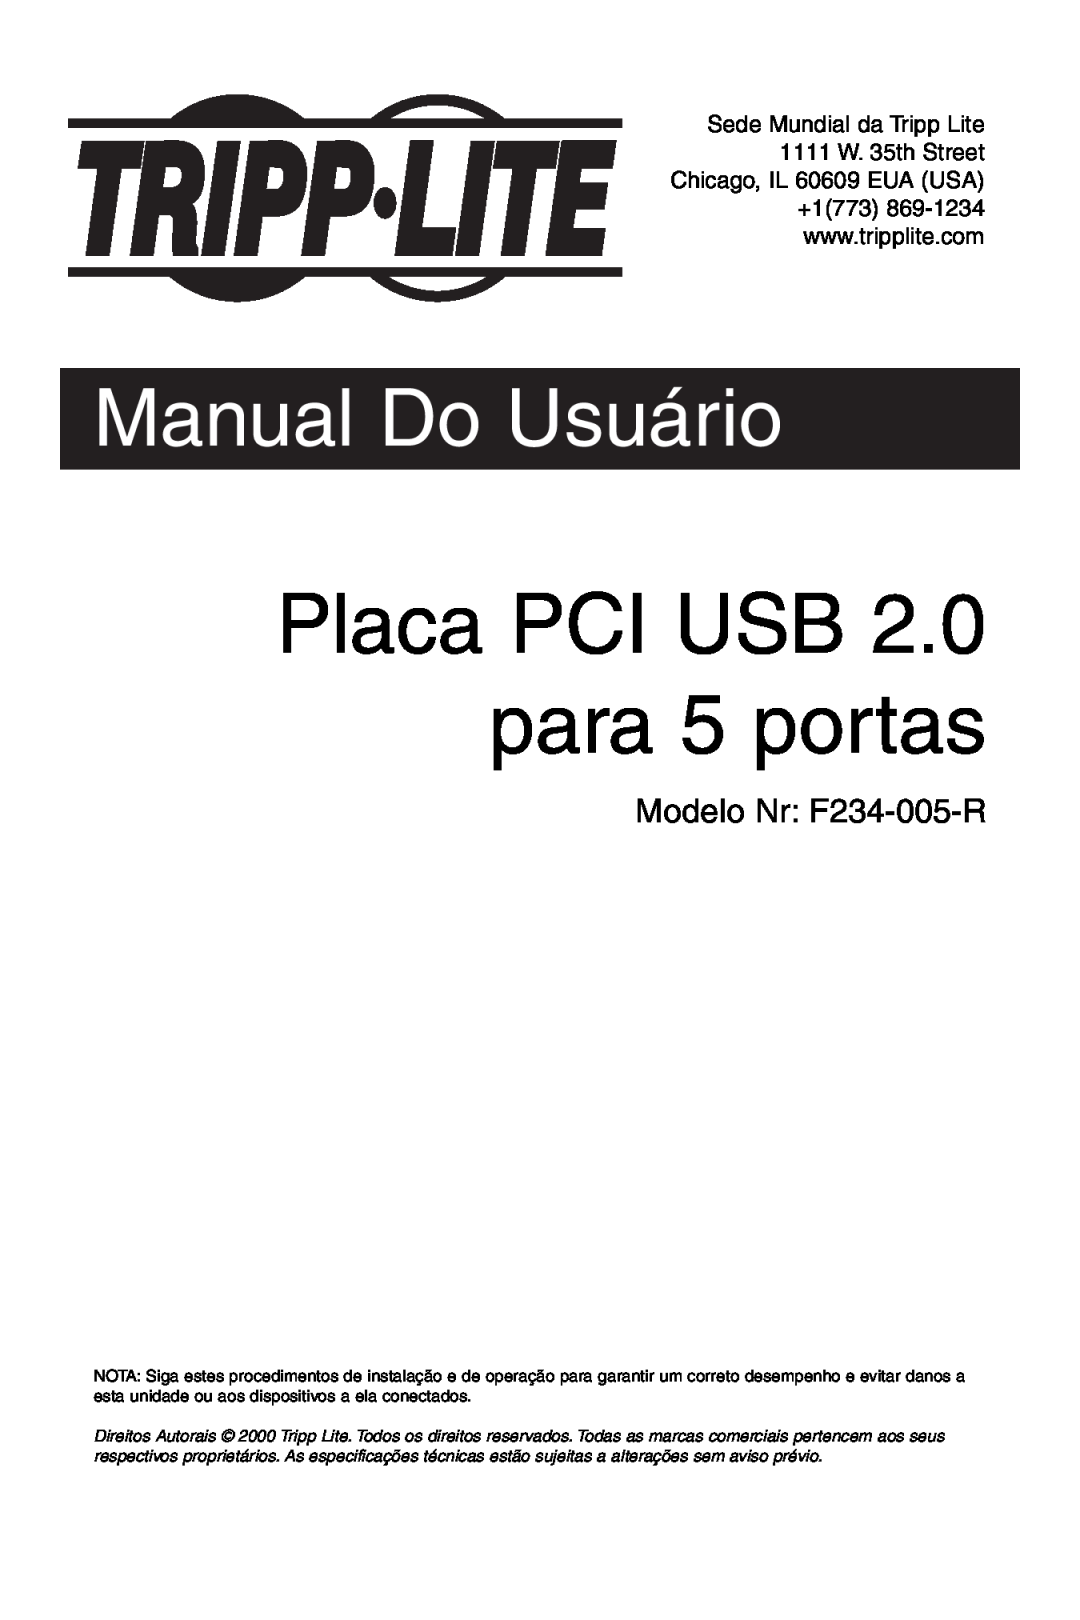 Tripp Lite U234-005-R user manual Placa PCI USB 2.0 para 5 portas, Manual Do Usuário 